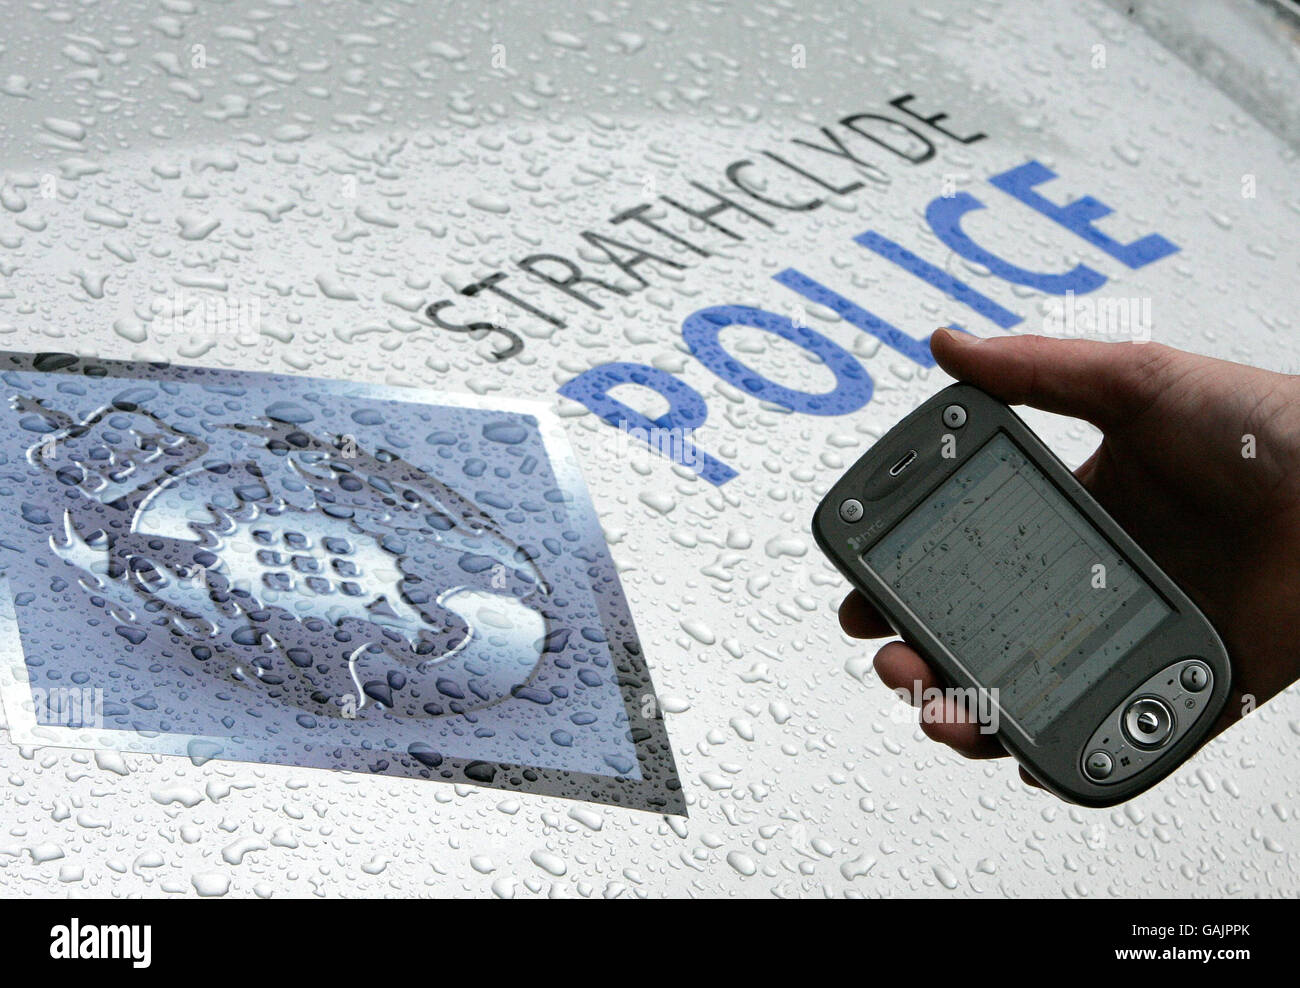 Die Polizei von Strathclyde zeigt ein neues integriertes Computersystem, das auch als Notebook im Takt verwendet werden kann und das auch in Patrouillenfahrzeugen eingebaut ist. Stockfoto